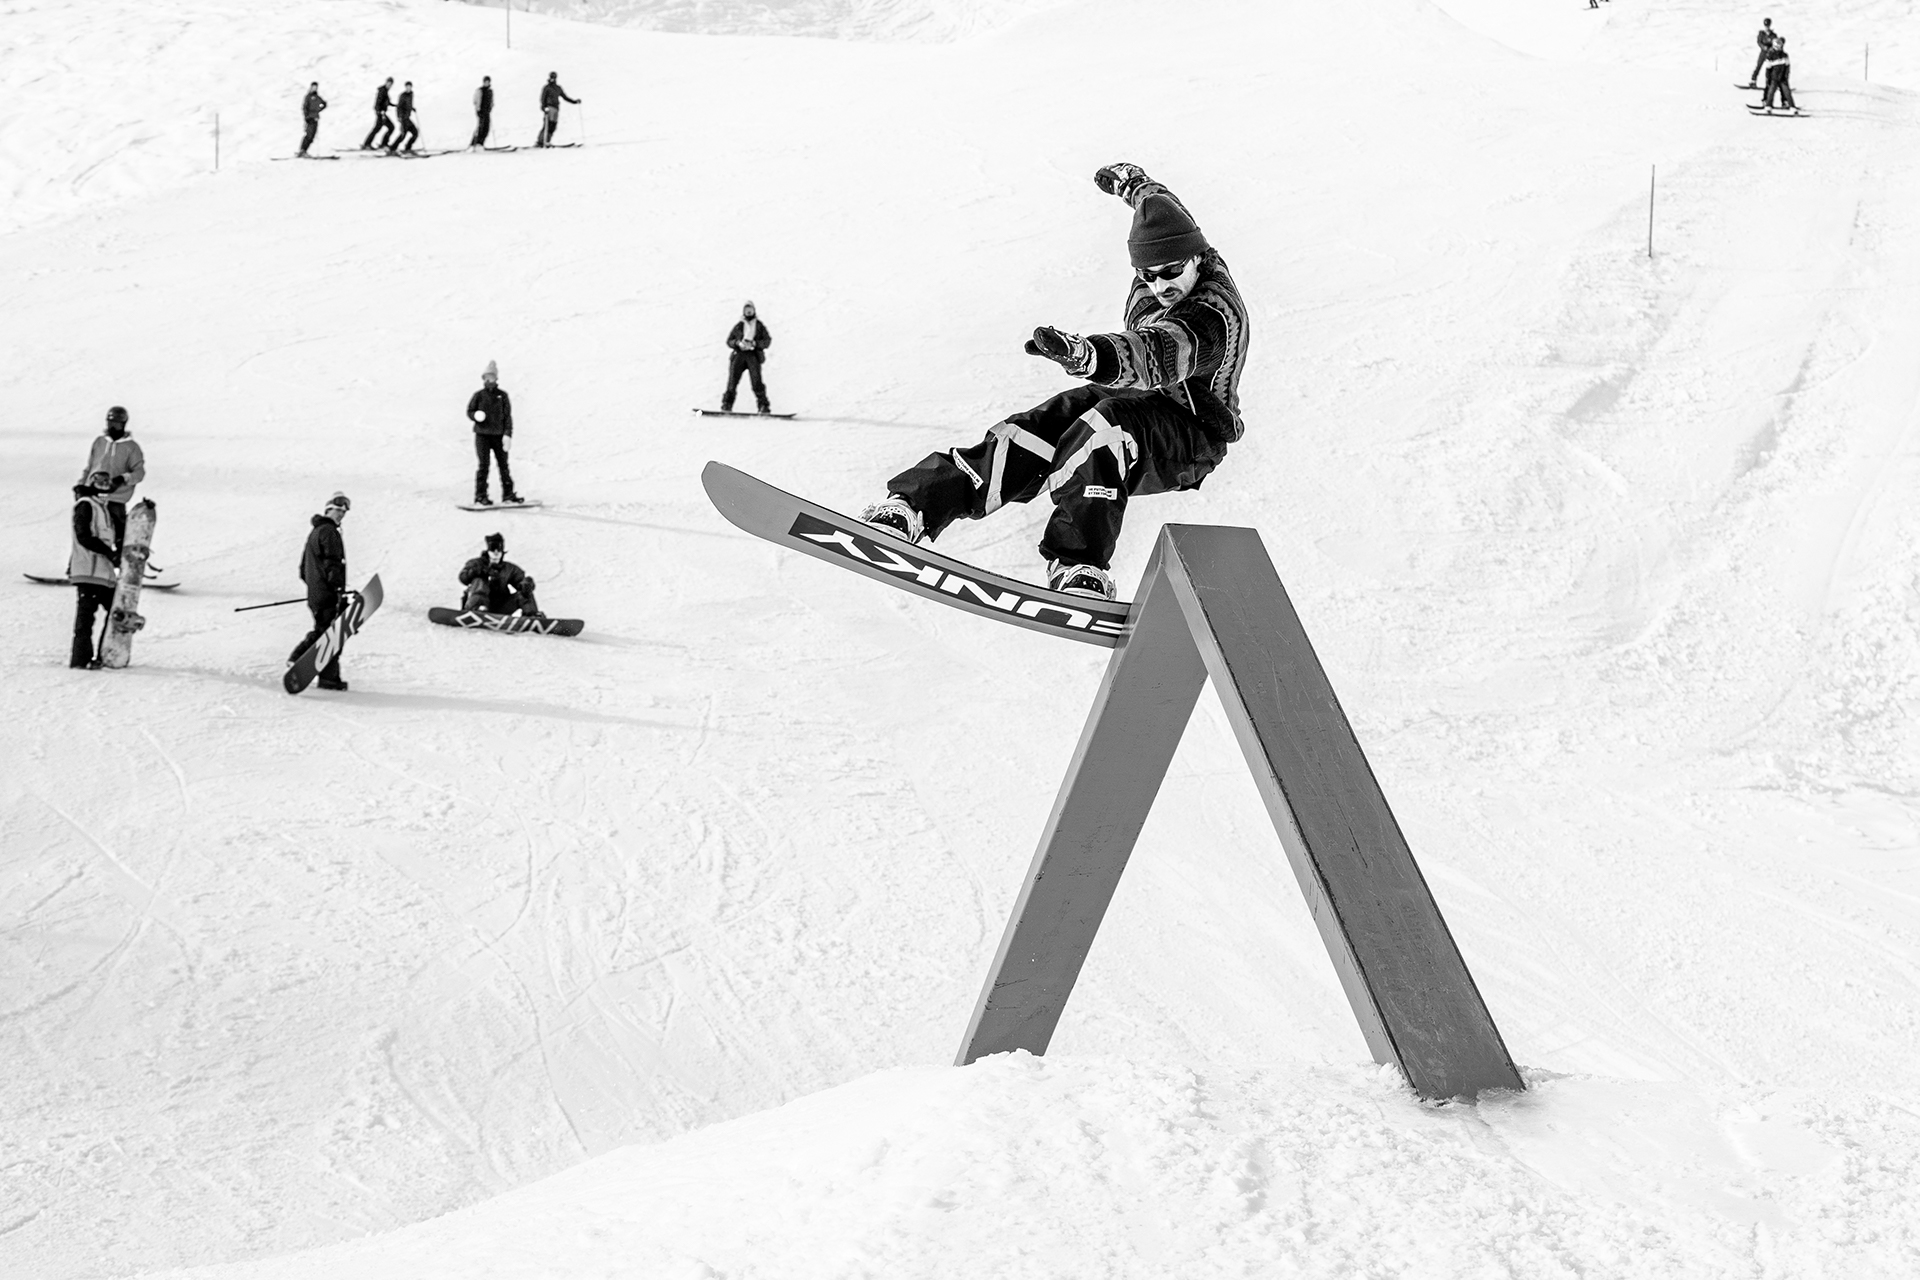 Snowboard Jump Moodbild benefits weiße arena gruppe investieren in wintersport